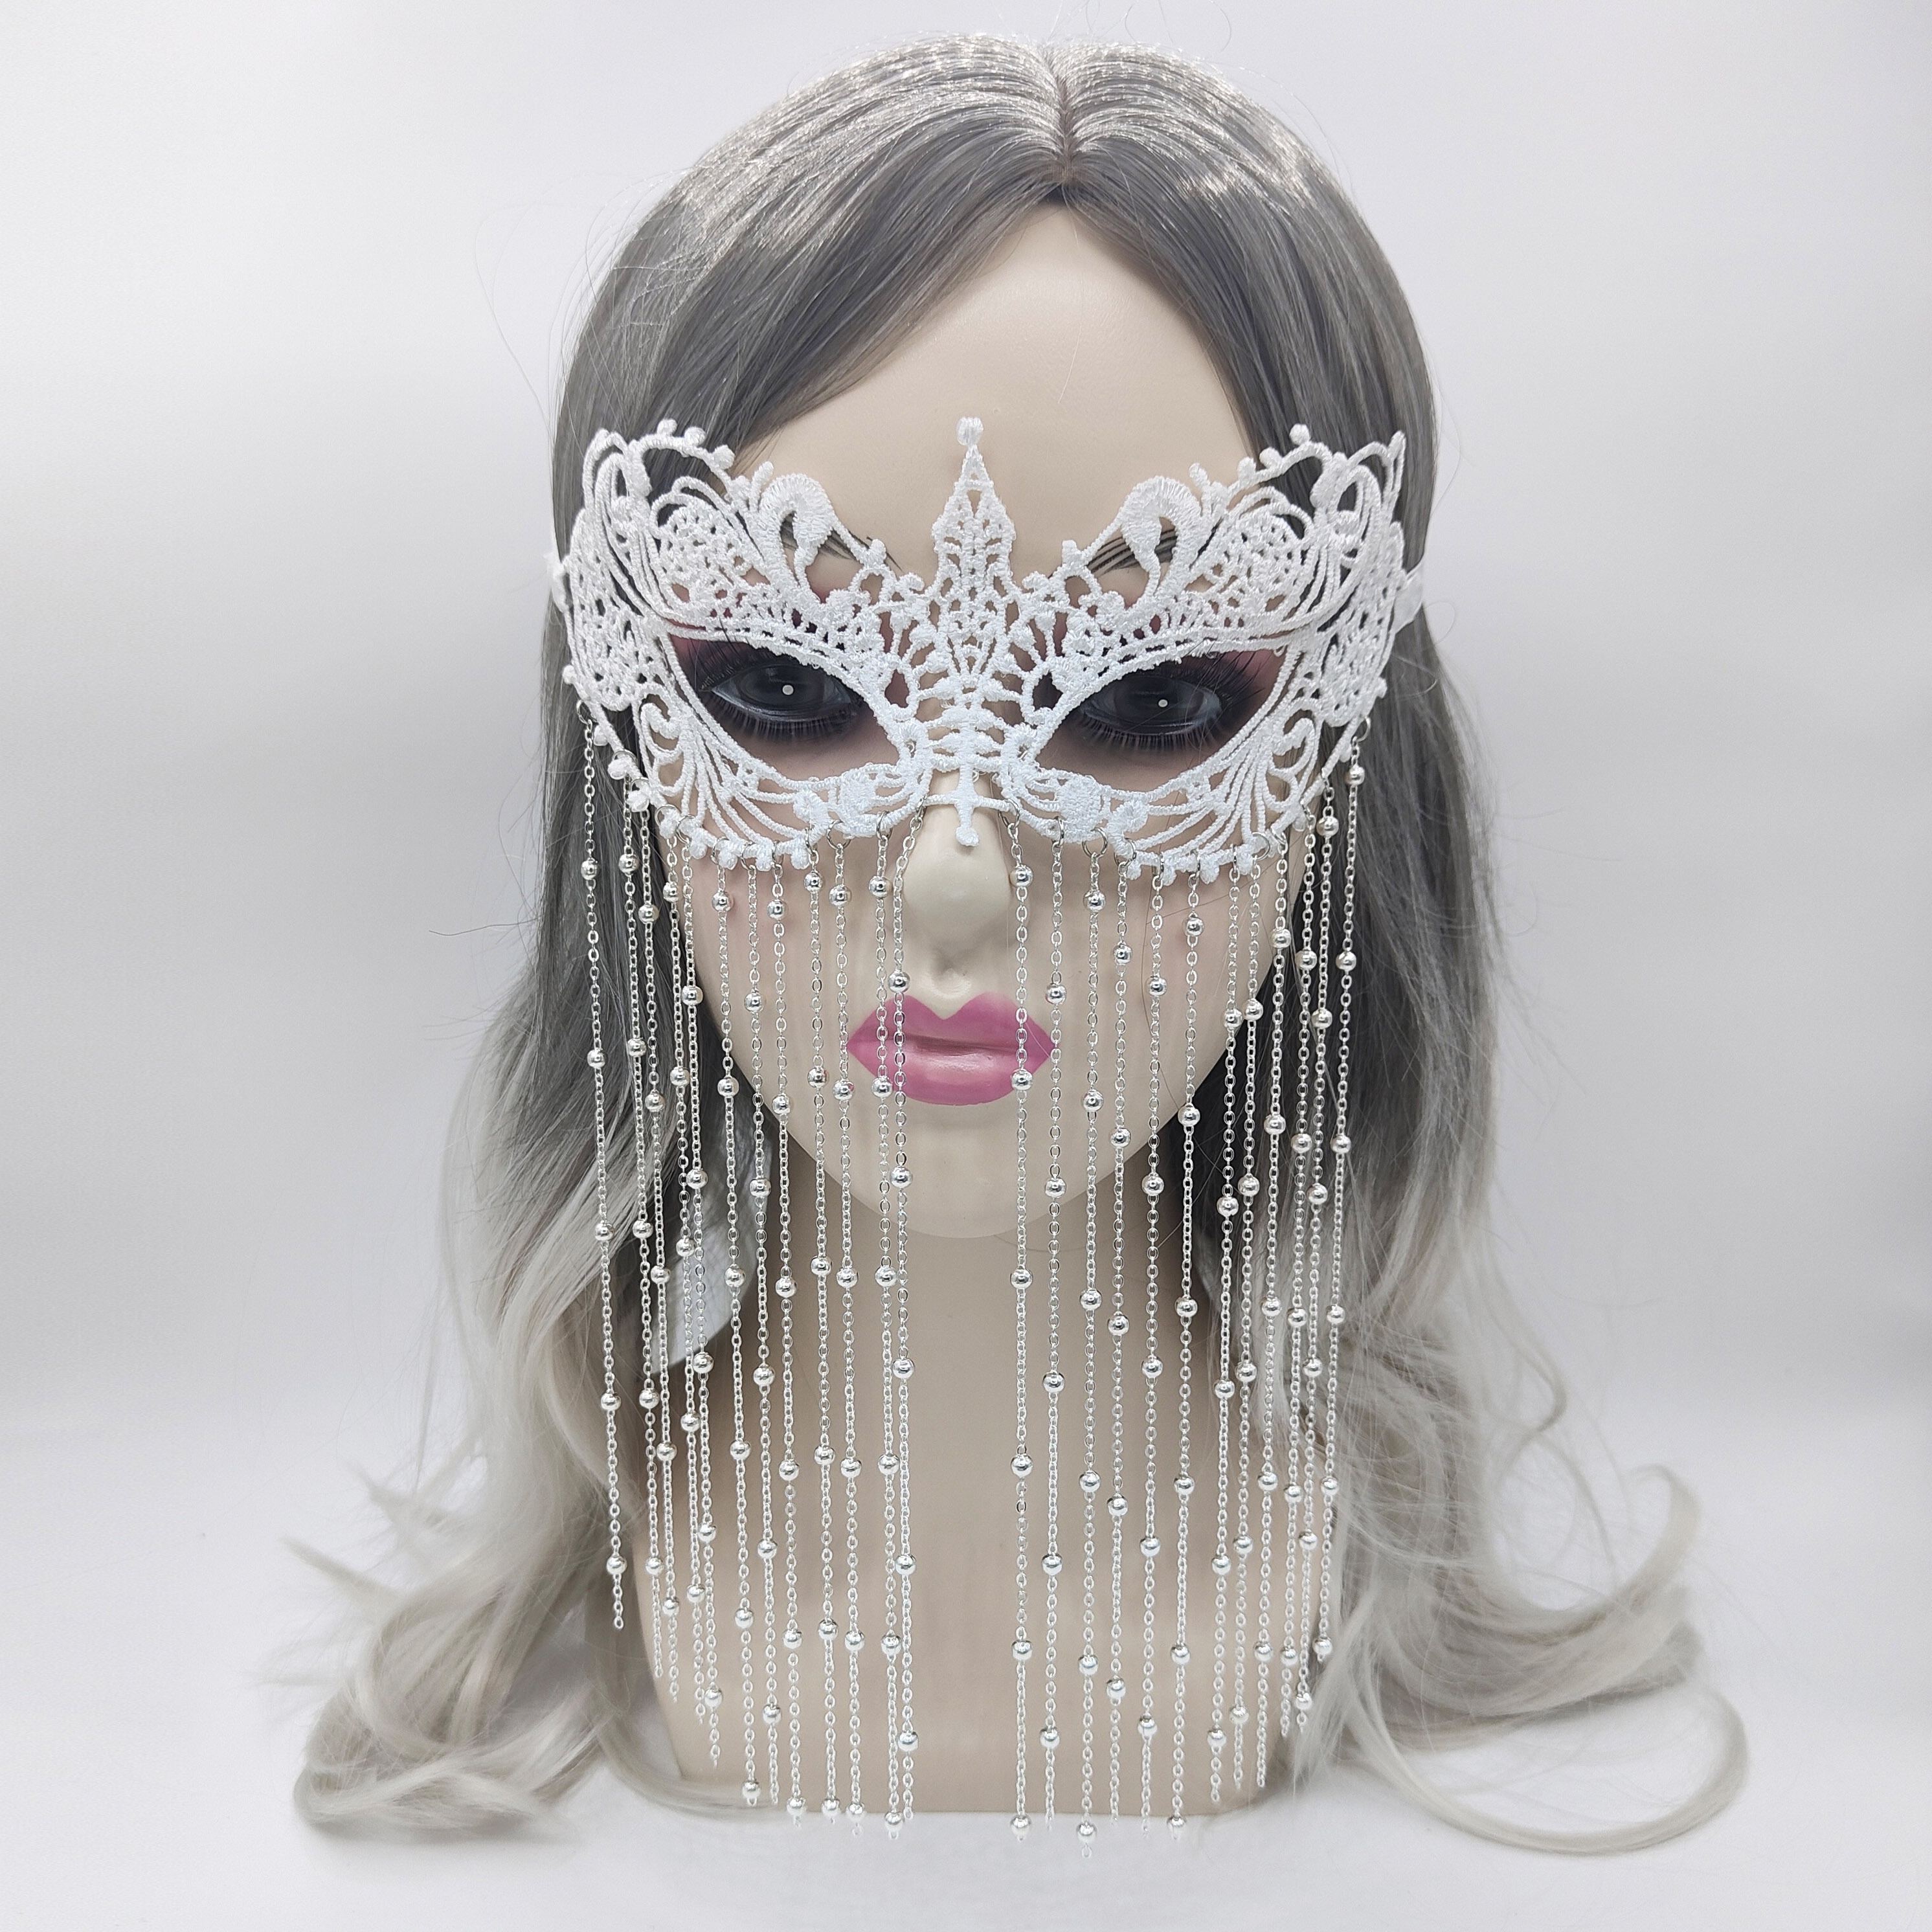 Masque pas cher, dentelle argent, pour femme : Carnaval, bal masqué